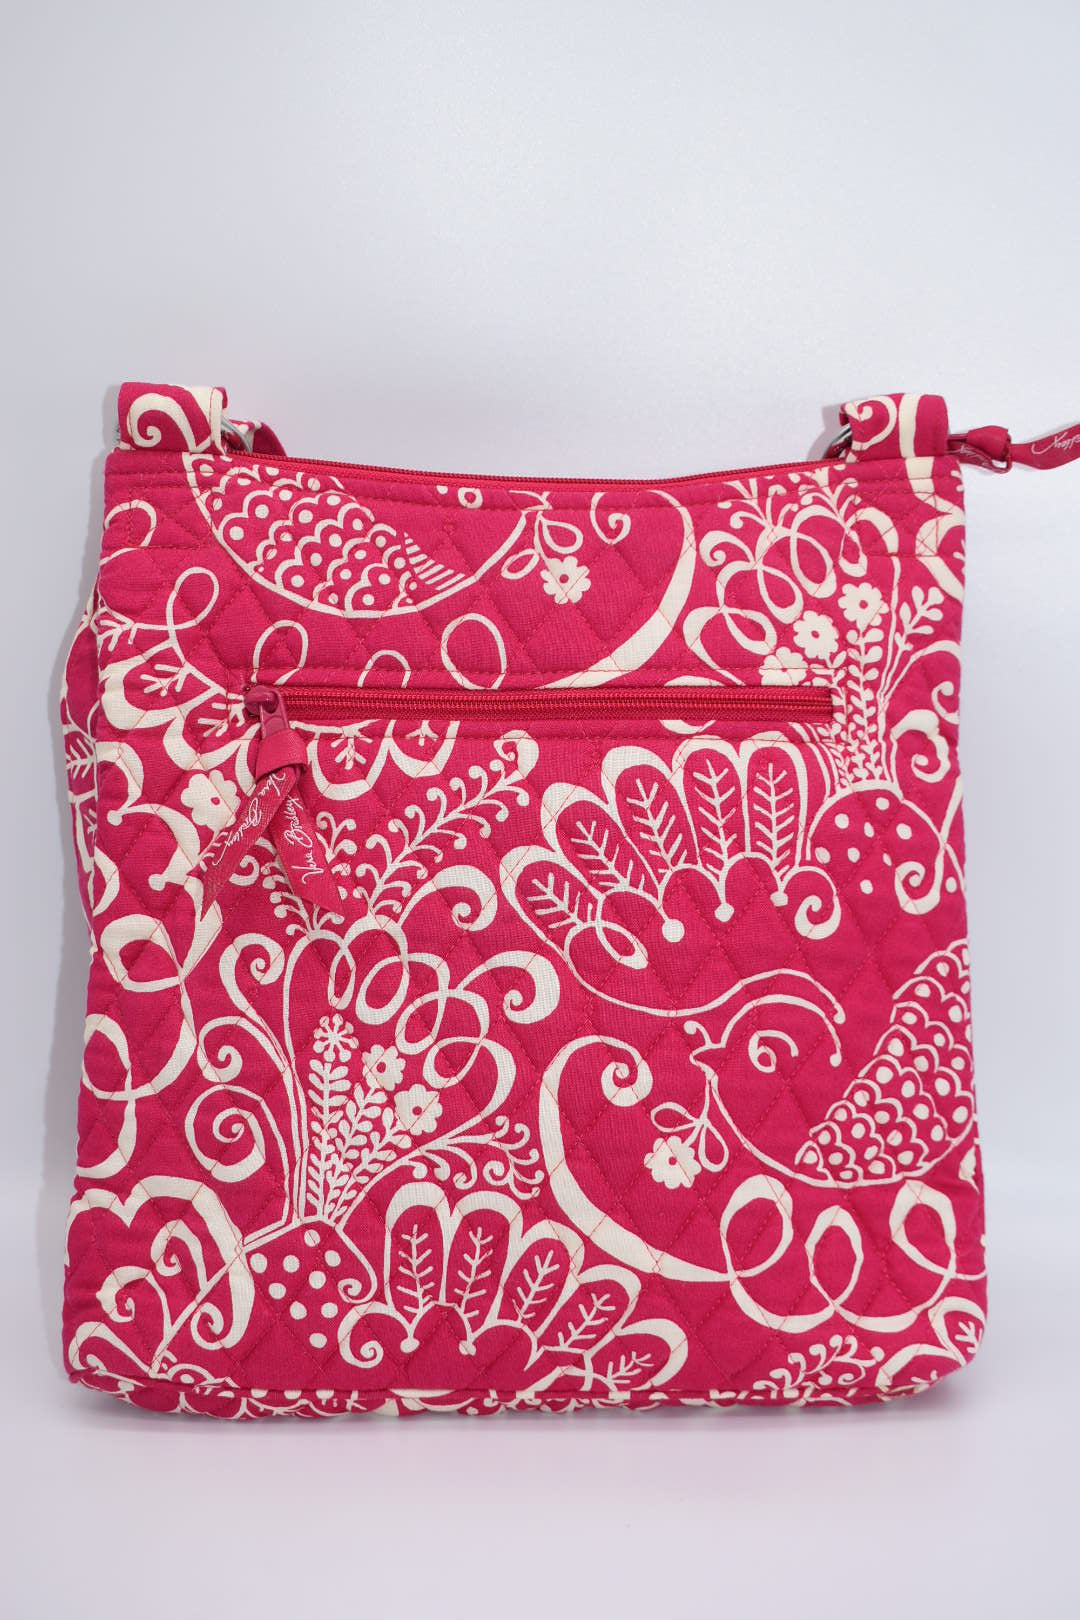 Vera Bradley Hipster Crossbody Bag in "Twirly Birds-Pink" Pattern